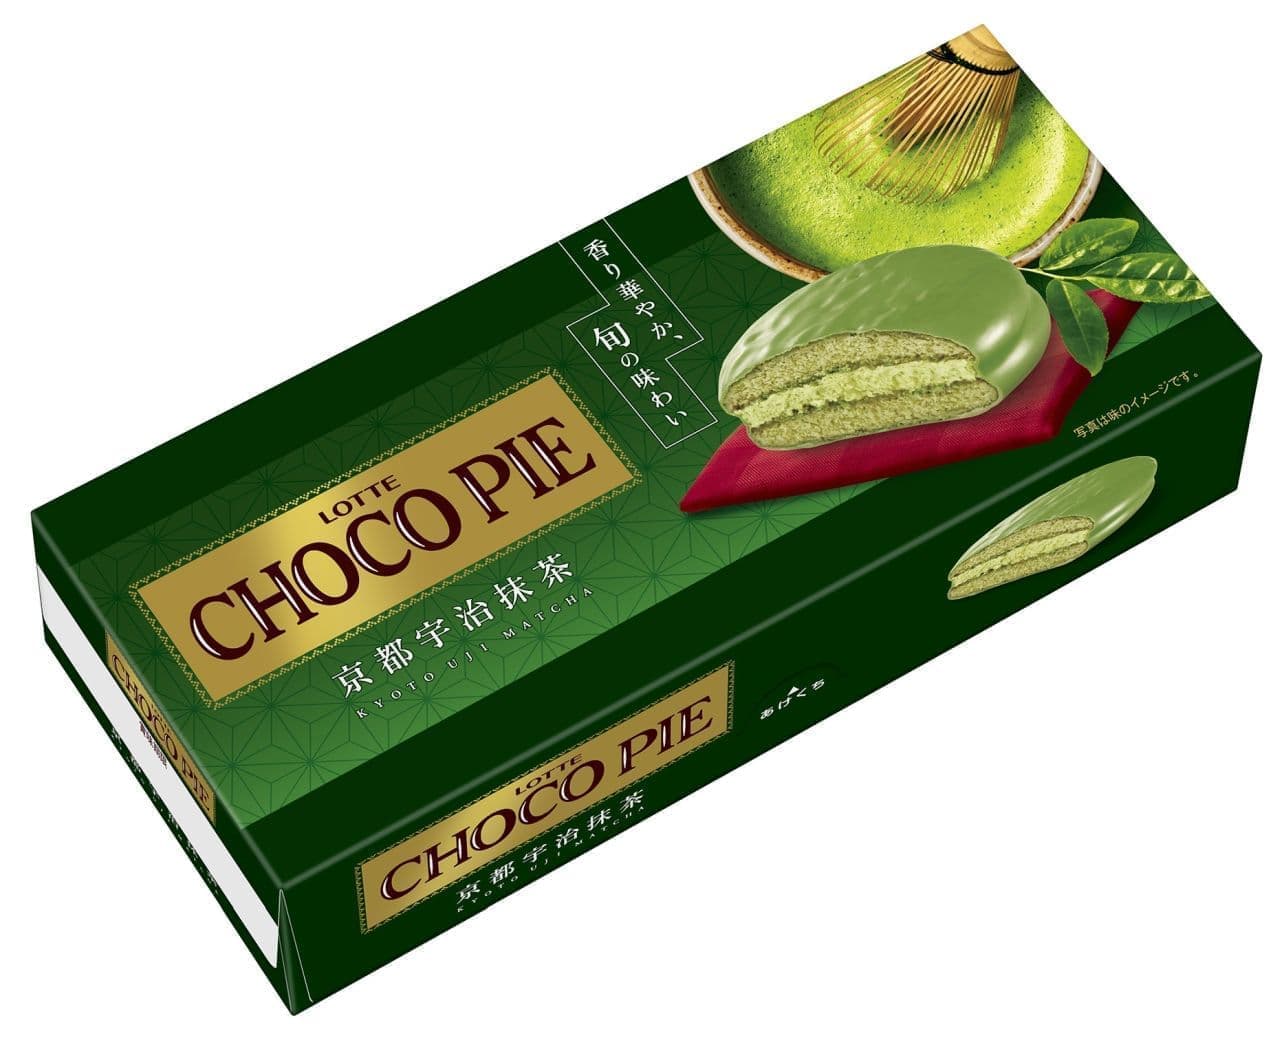 Lotte "Choco Pie [Kyoto Uji Green Tea]".